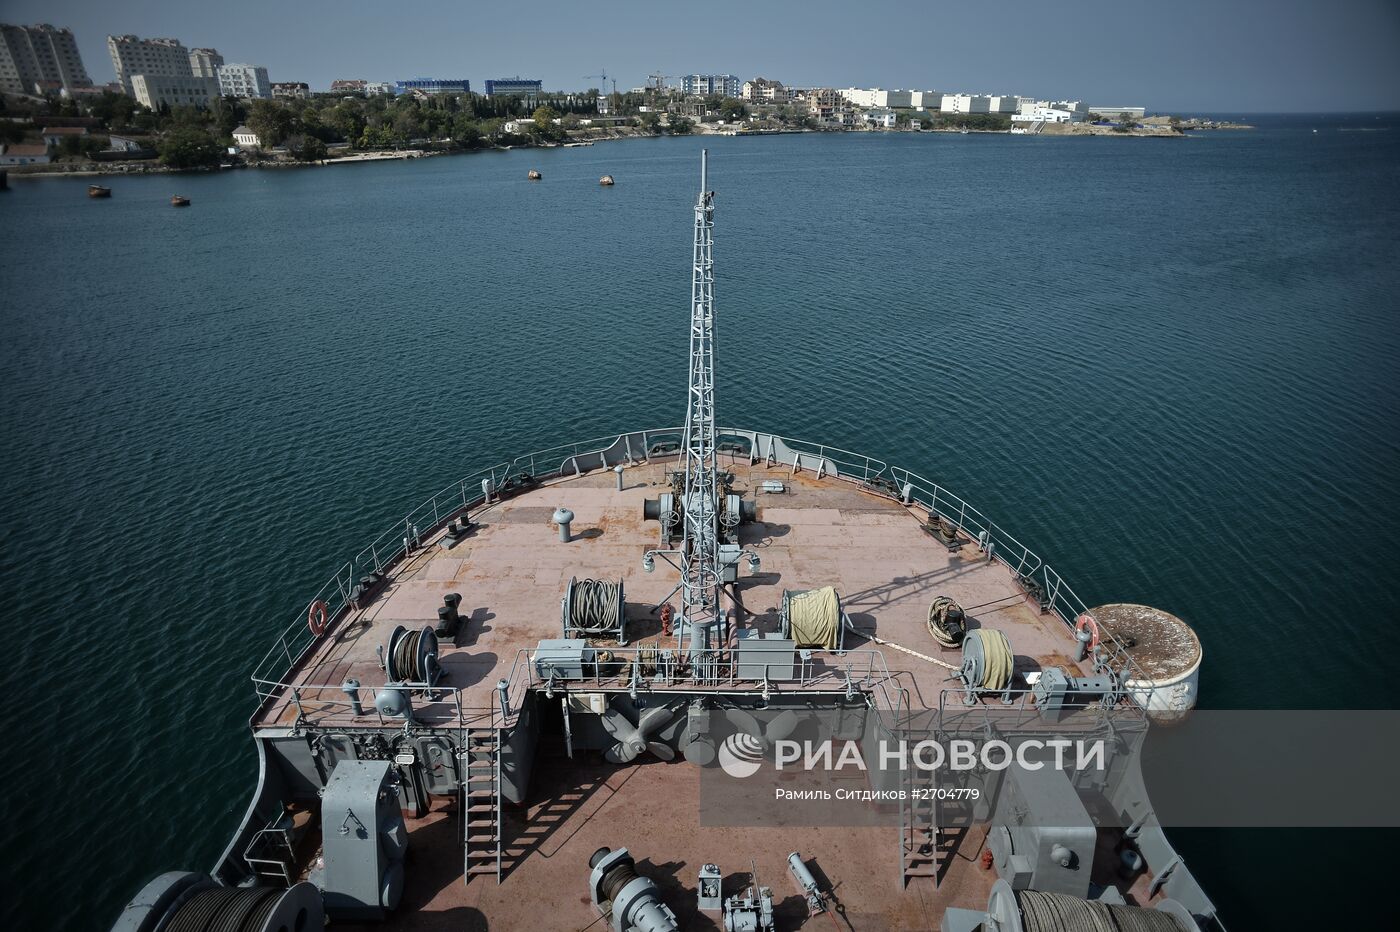 Спасательное судно "Коммуна" Черноморского Флота РФ